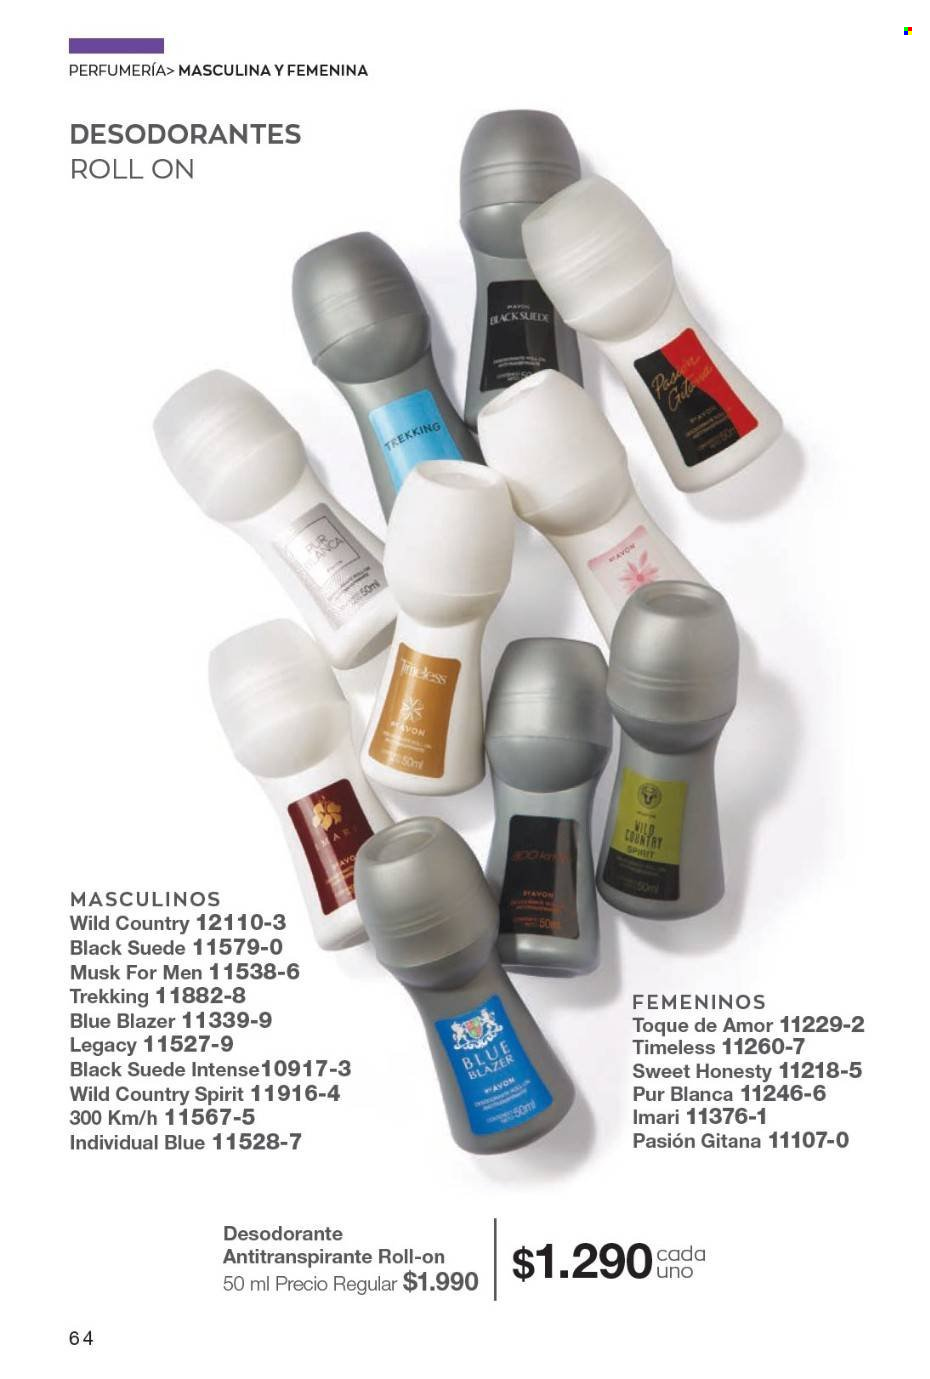 thumbnail - Catálogo Avon - Ventas - desodorante de bola, Imari, Pur Blanca, desodorante, antitranspirante. Página 64.